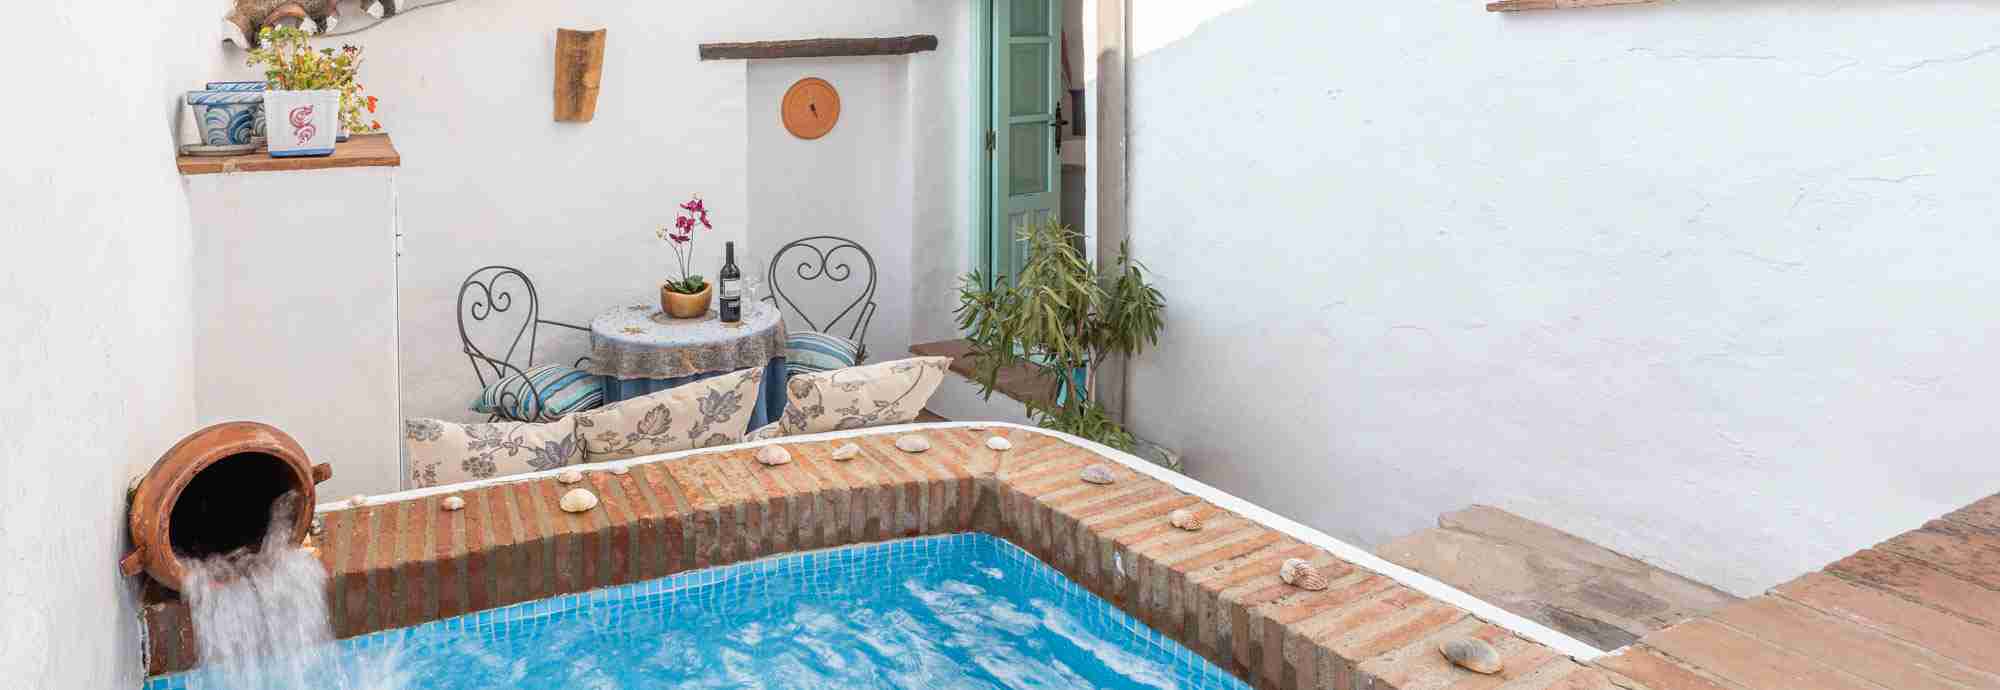 Atractiva casa de pueblo con terraza en la azotea, patio y mini piscina